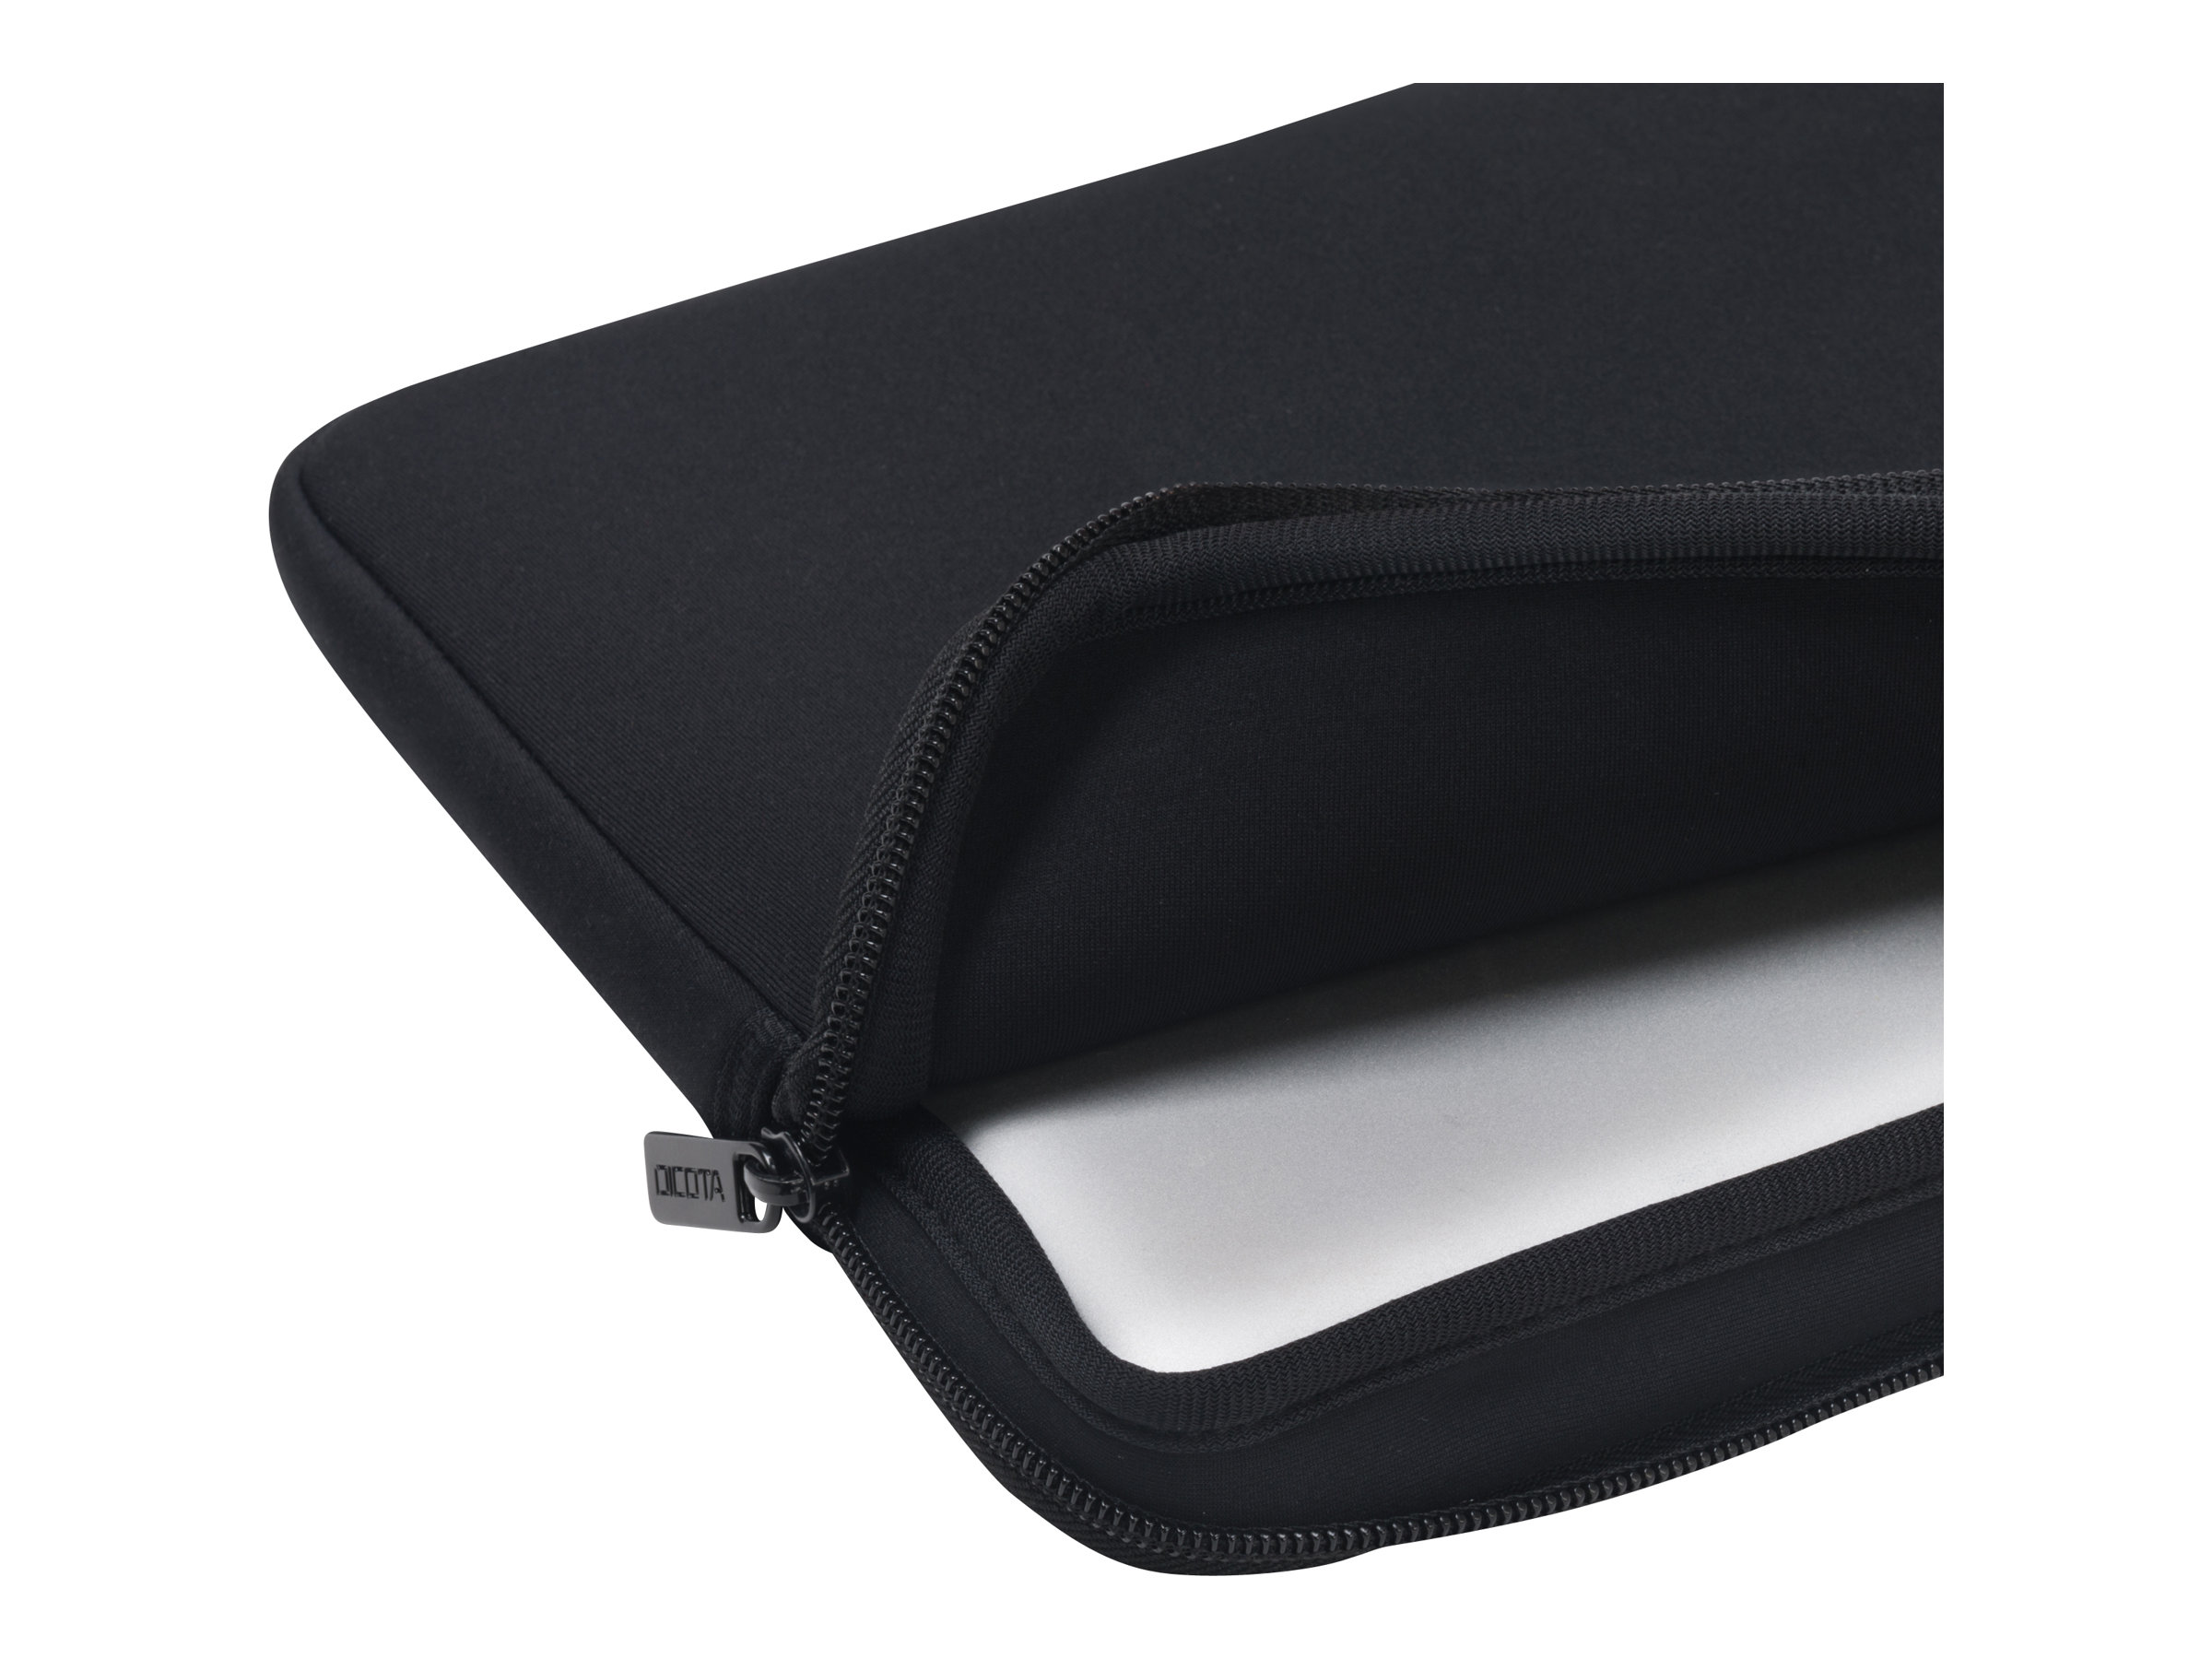 DICOTA PerfectSkin Laptop Sleeve 12.5" - Housse d'ordinateur portable - 12.5" - noir - D31185 - Sacoches pour ordinateur portable